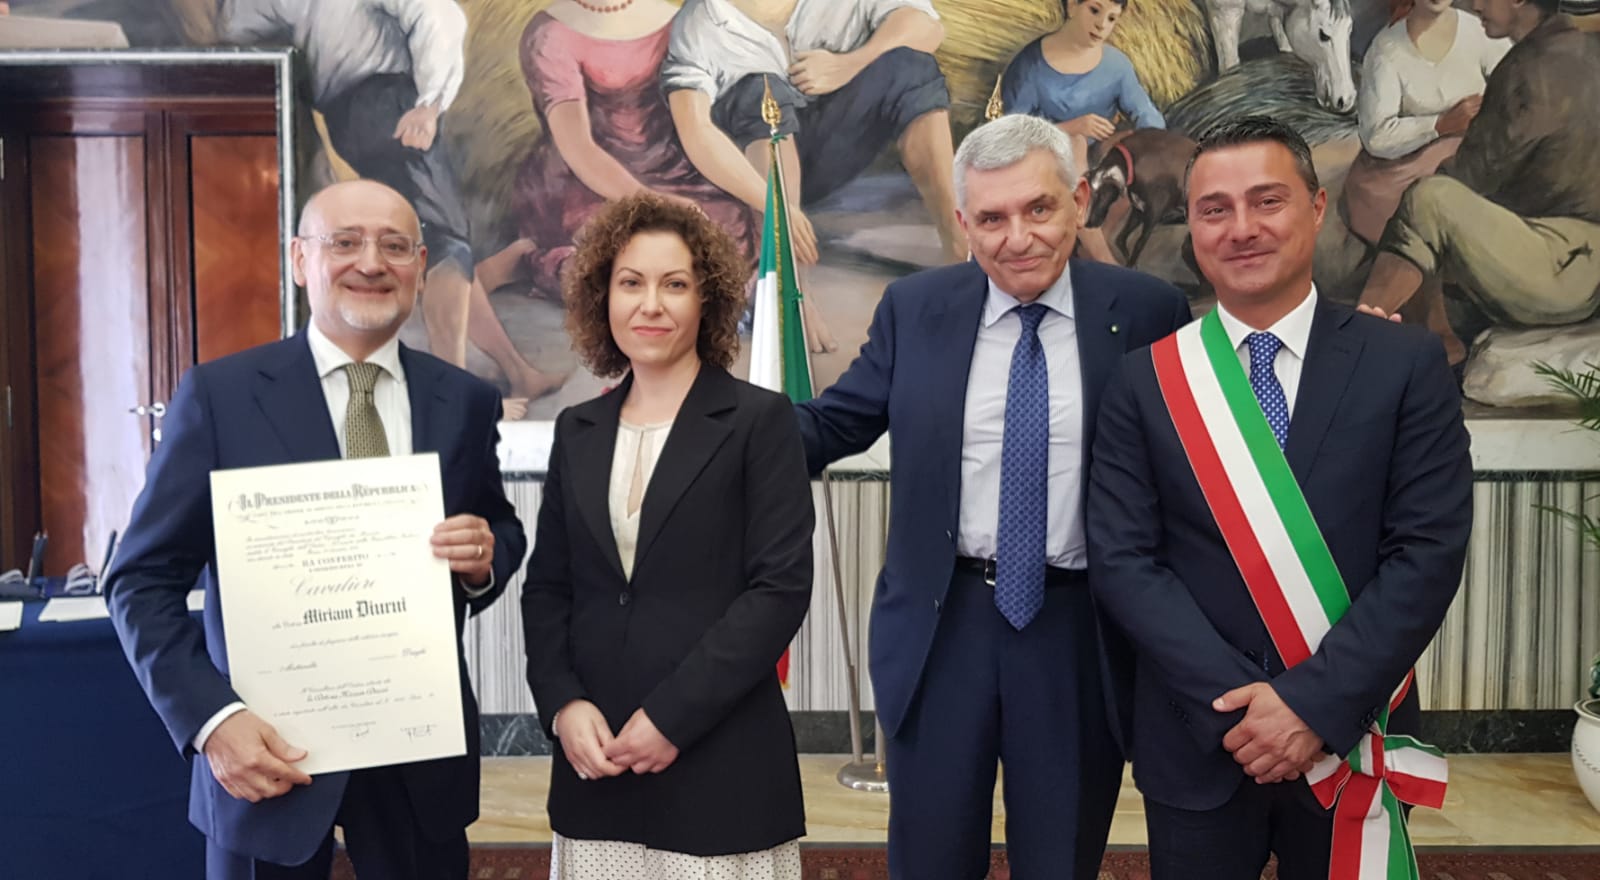 Miriam Diurni Cavaliere Ordine al Merito della Repubblica Italiana